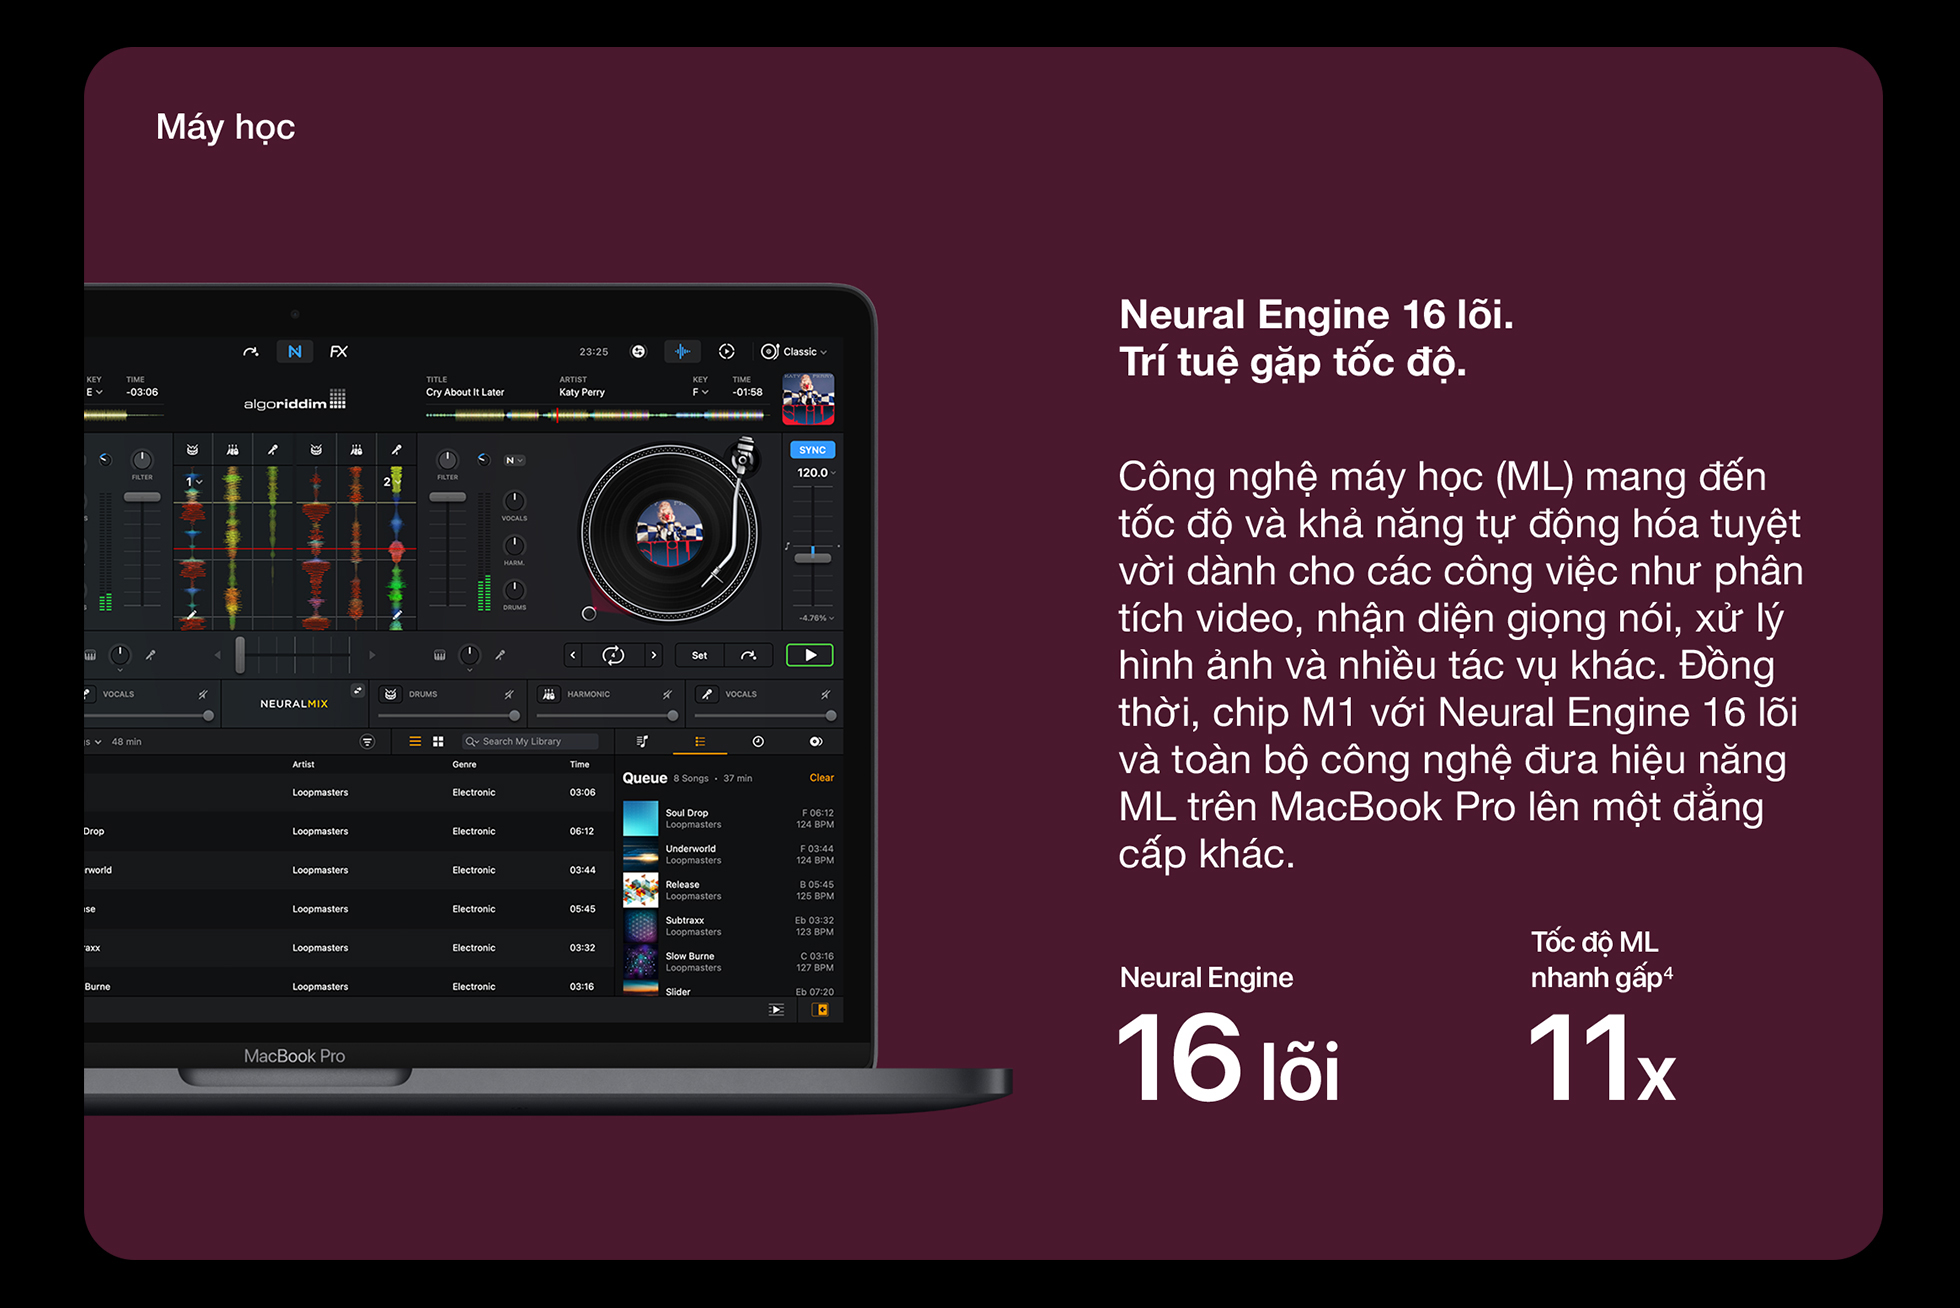 MacBook Pro M1 2020 - Neural Engine